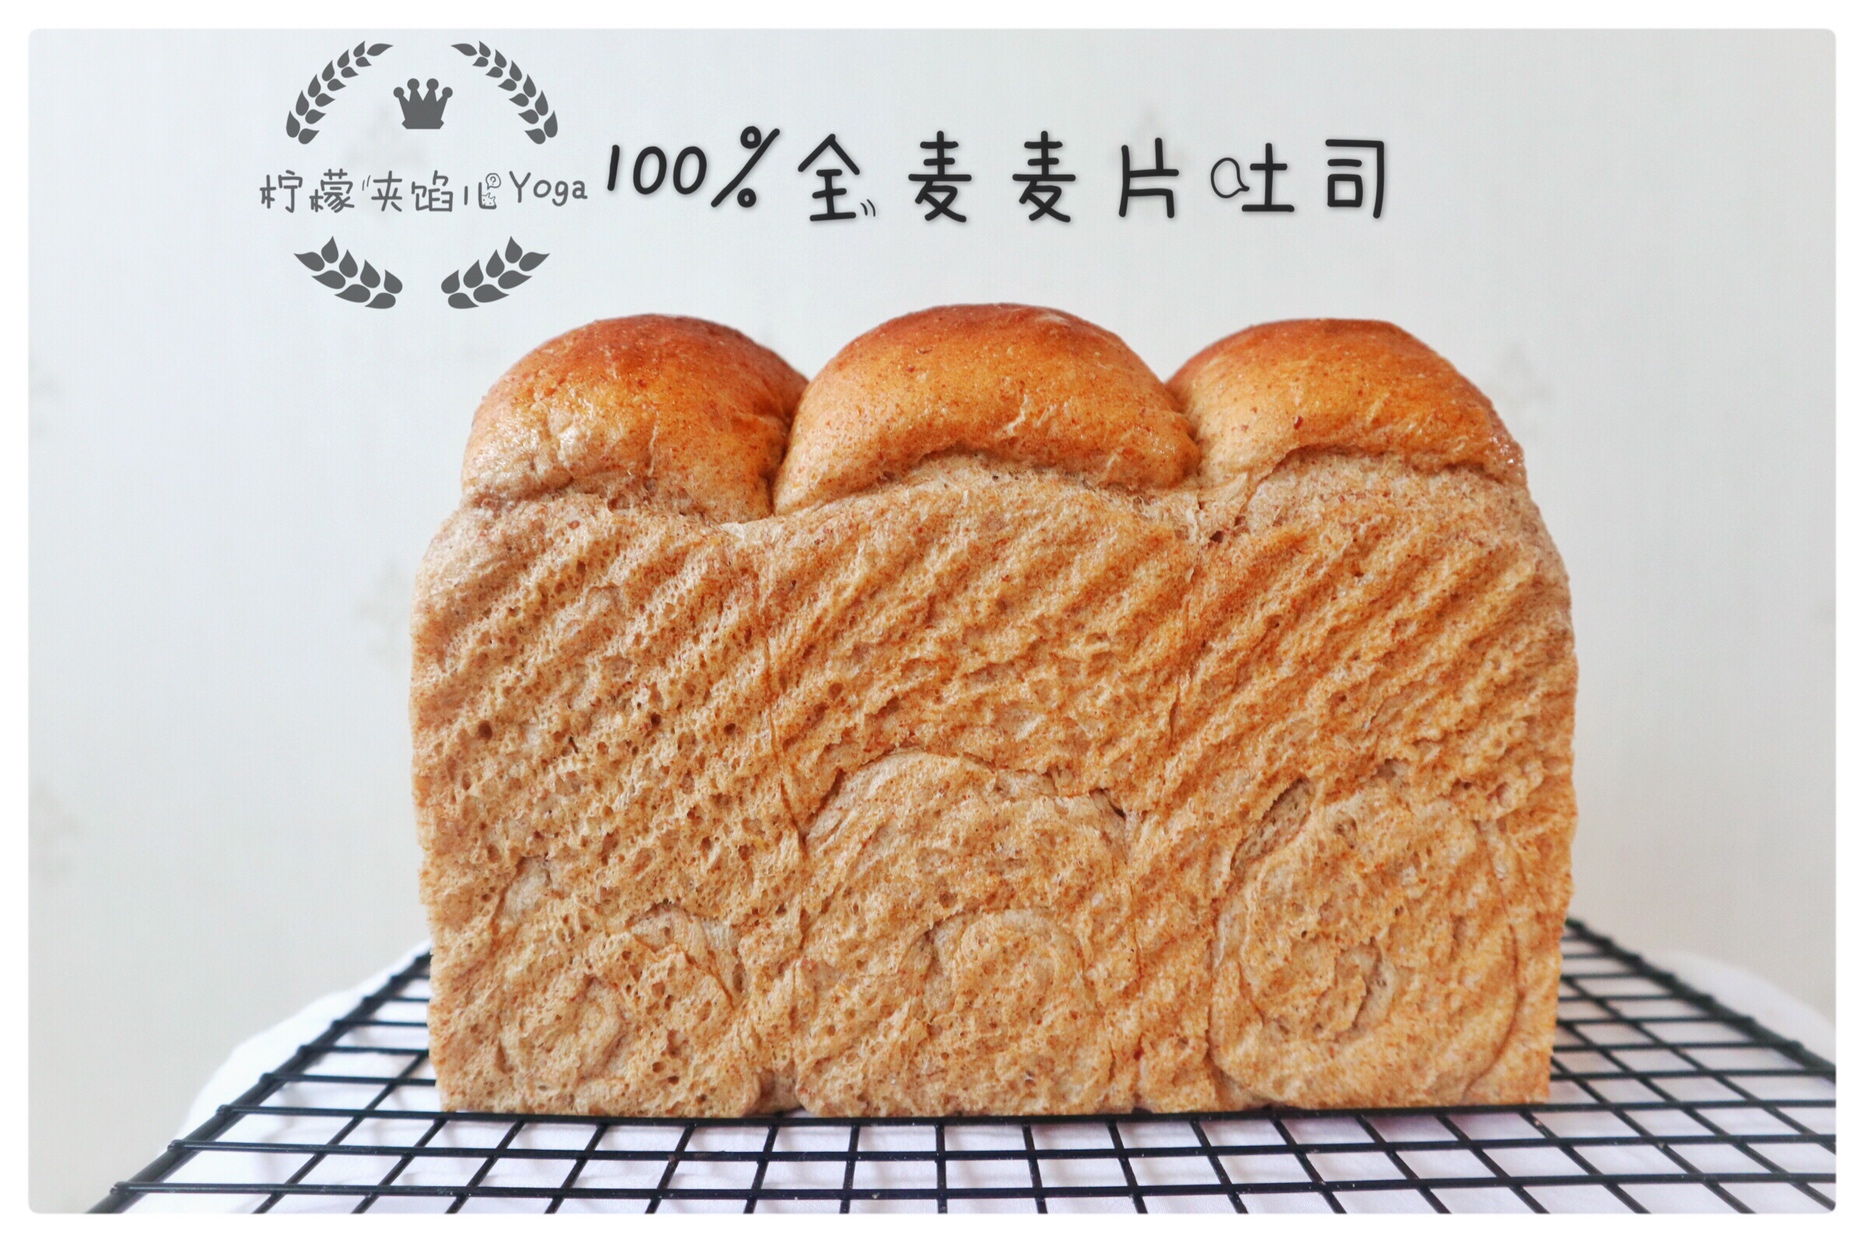 面包机版面包的封面